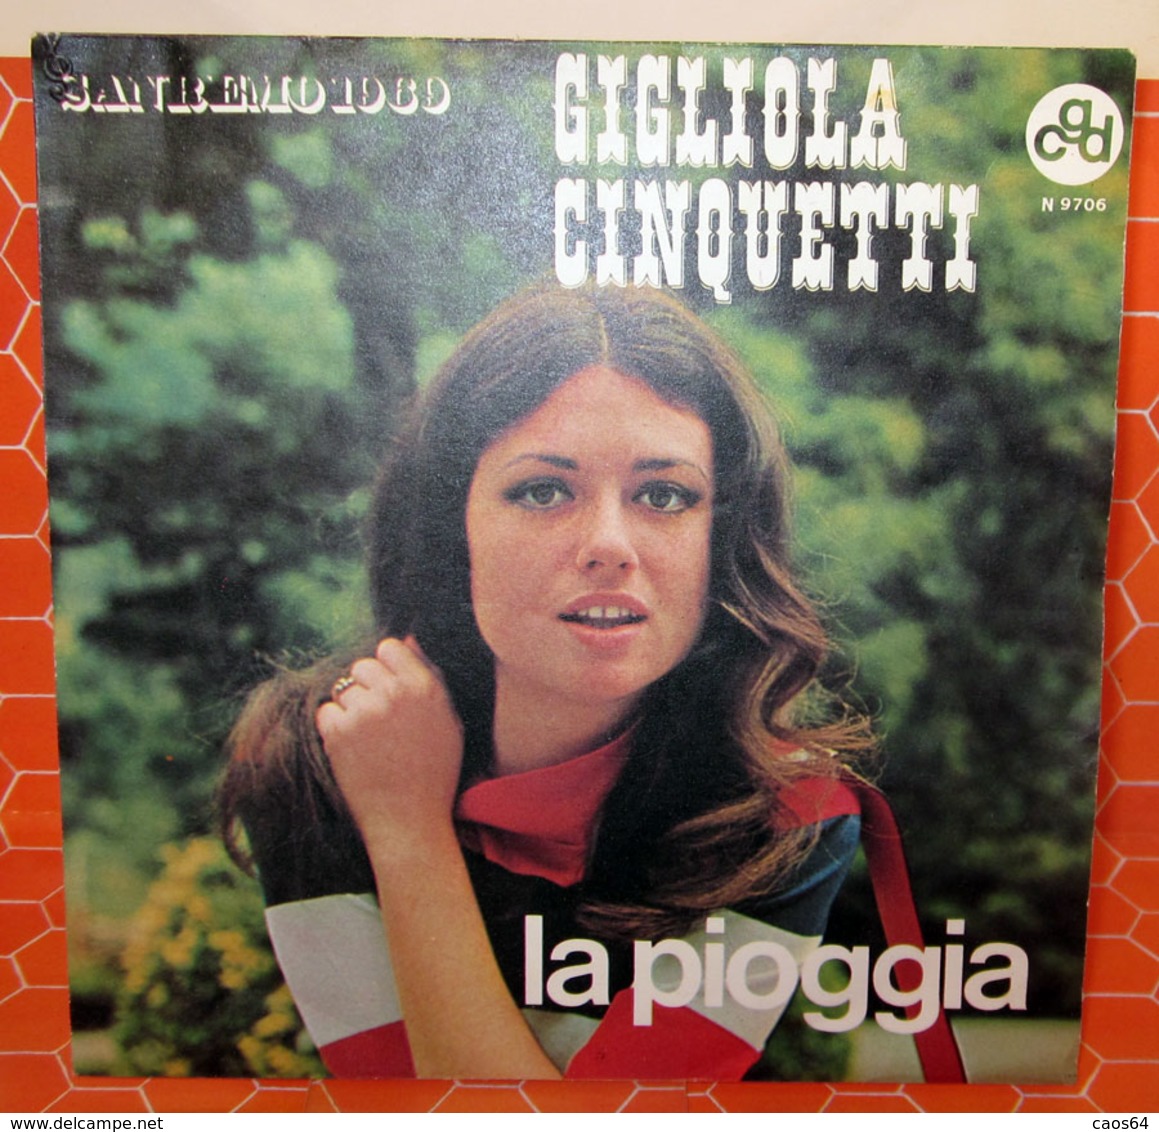 GIGLIOLA CINQUETTI LA PIOGGIA  7" - Other - Italian Music